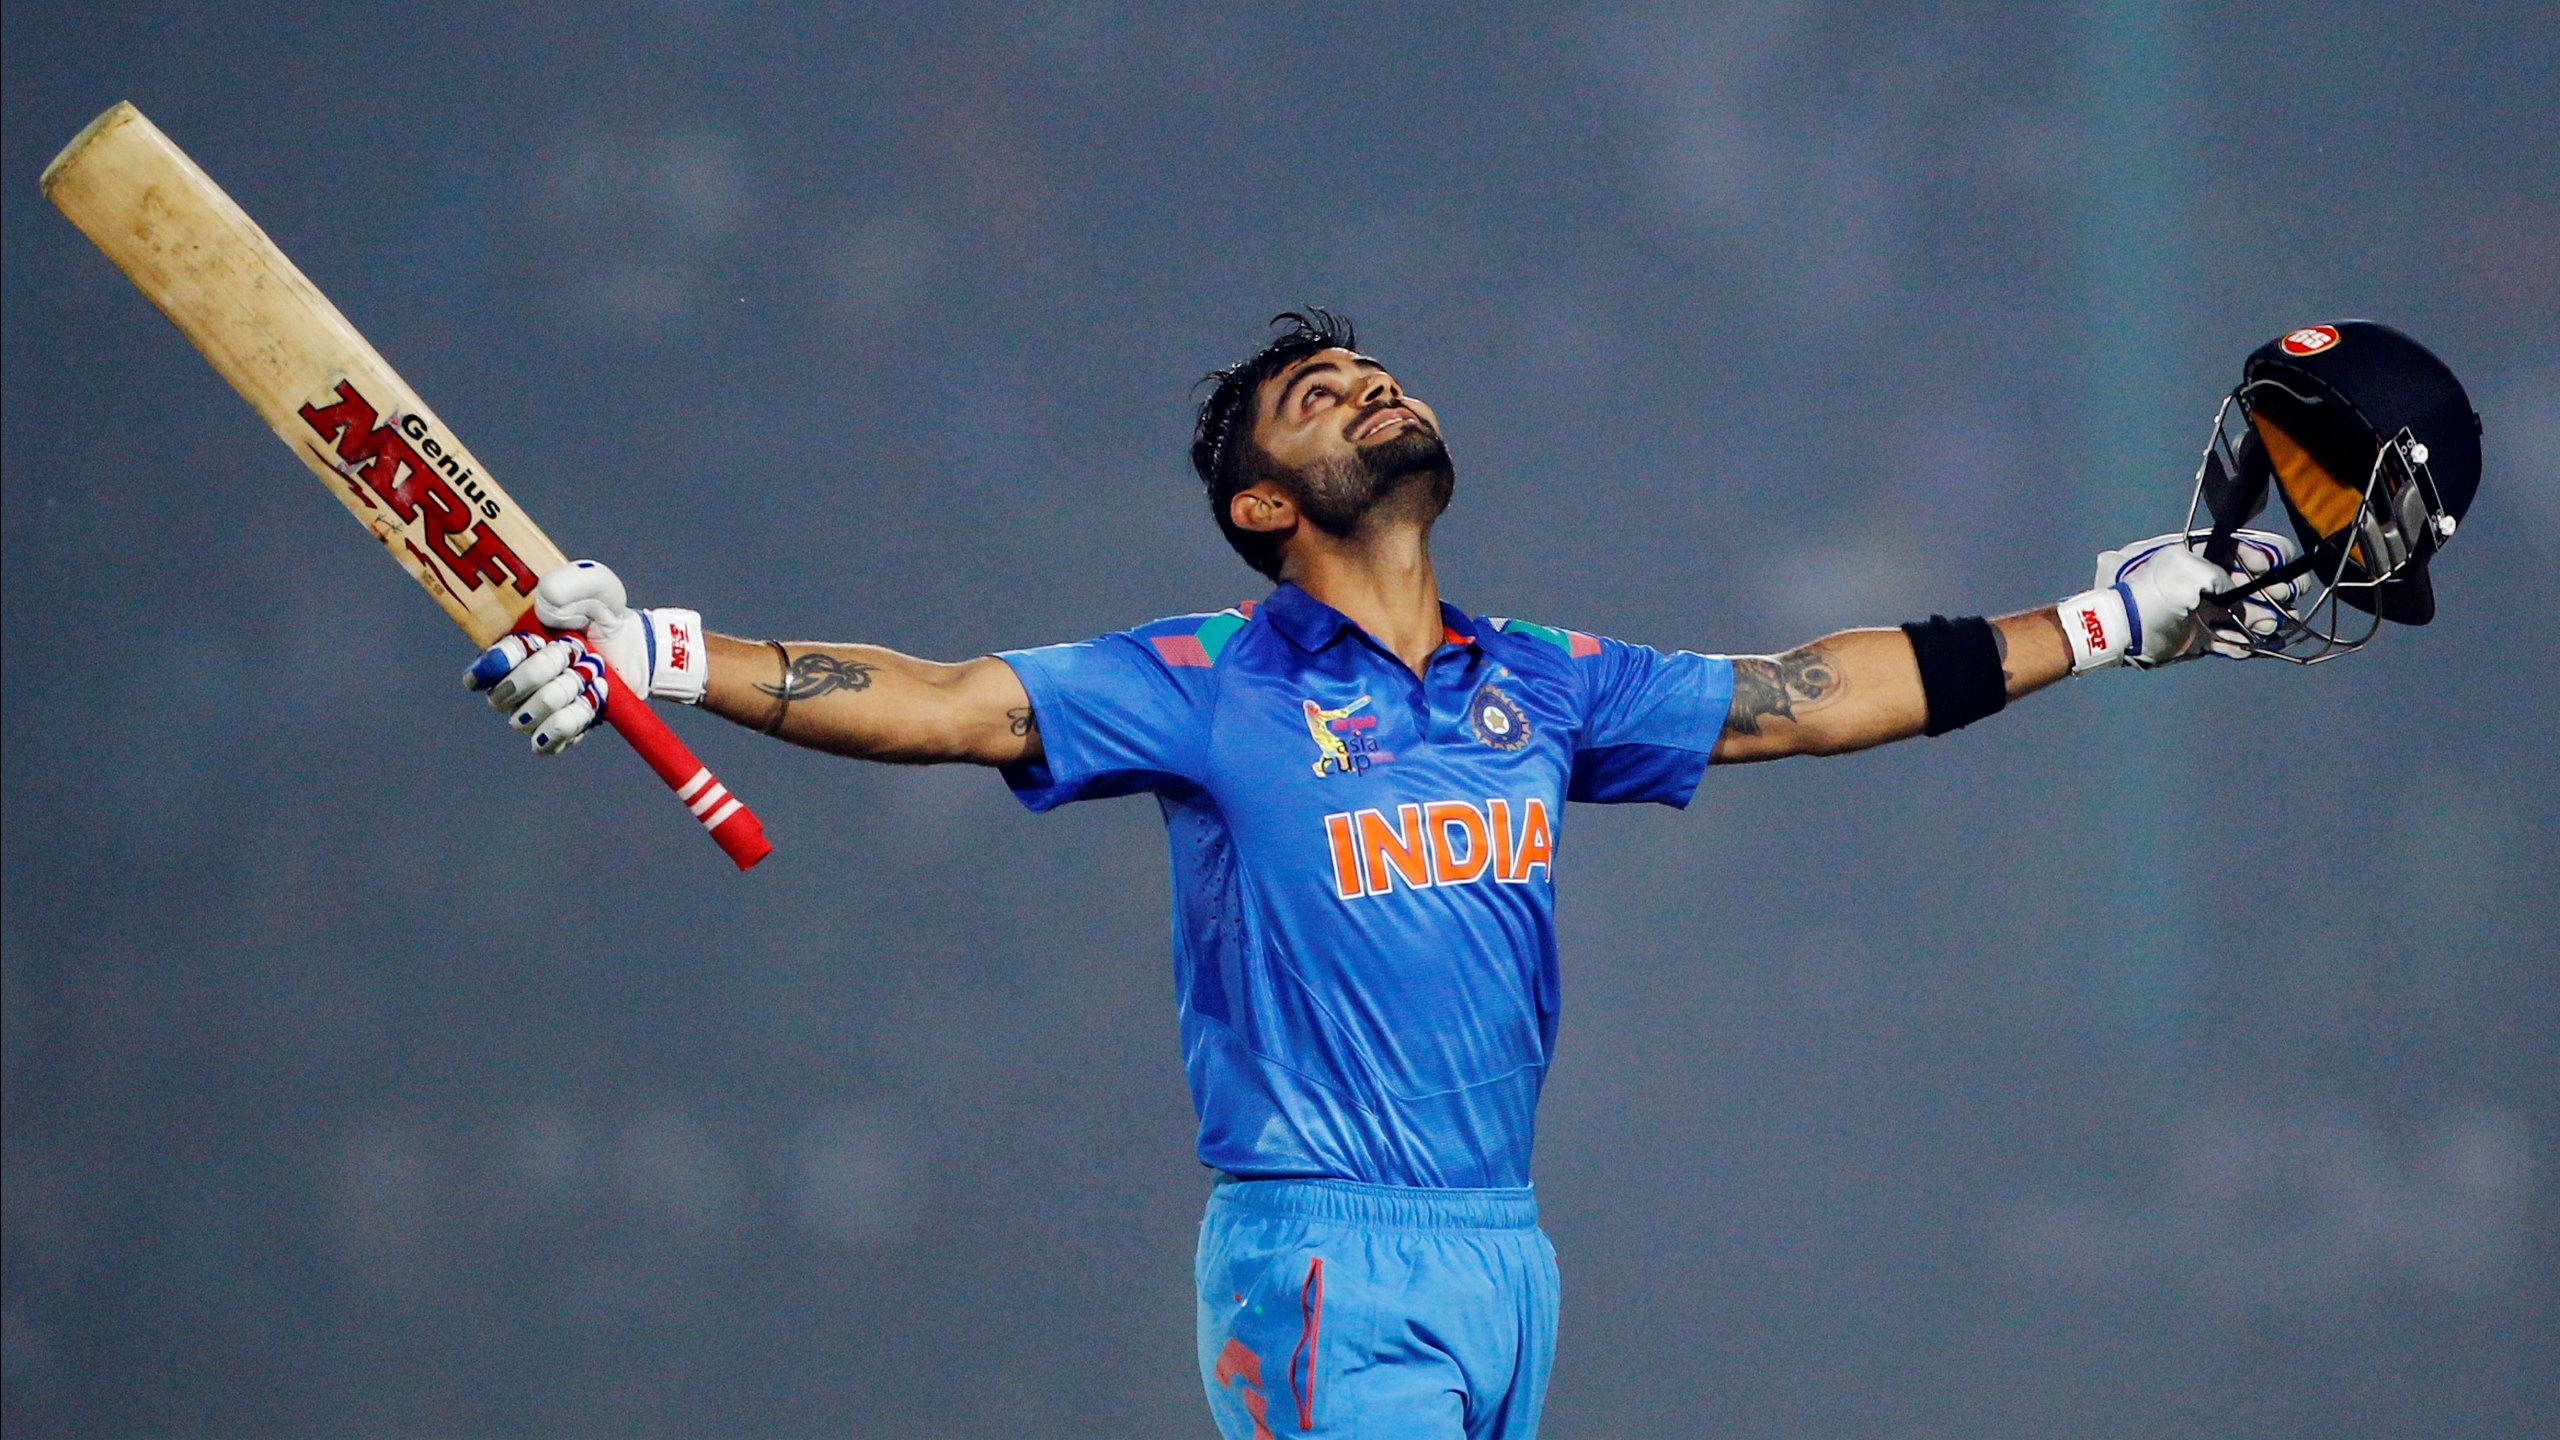 विराट कोहली ने 37 बार लगाया वनडे में शतक, जाने कितने में भारत को करना पड़ा हार का सामना